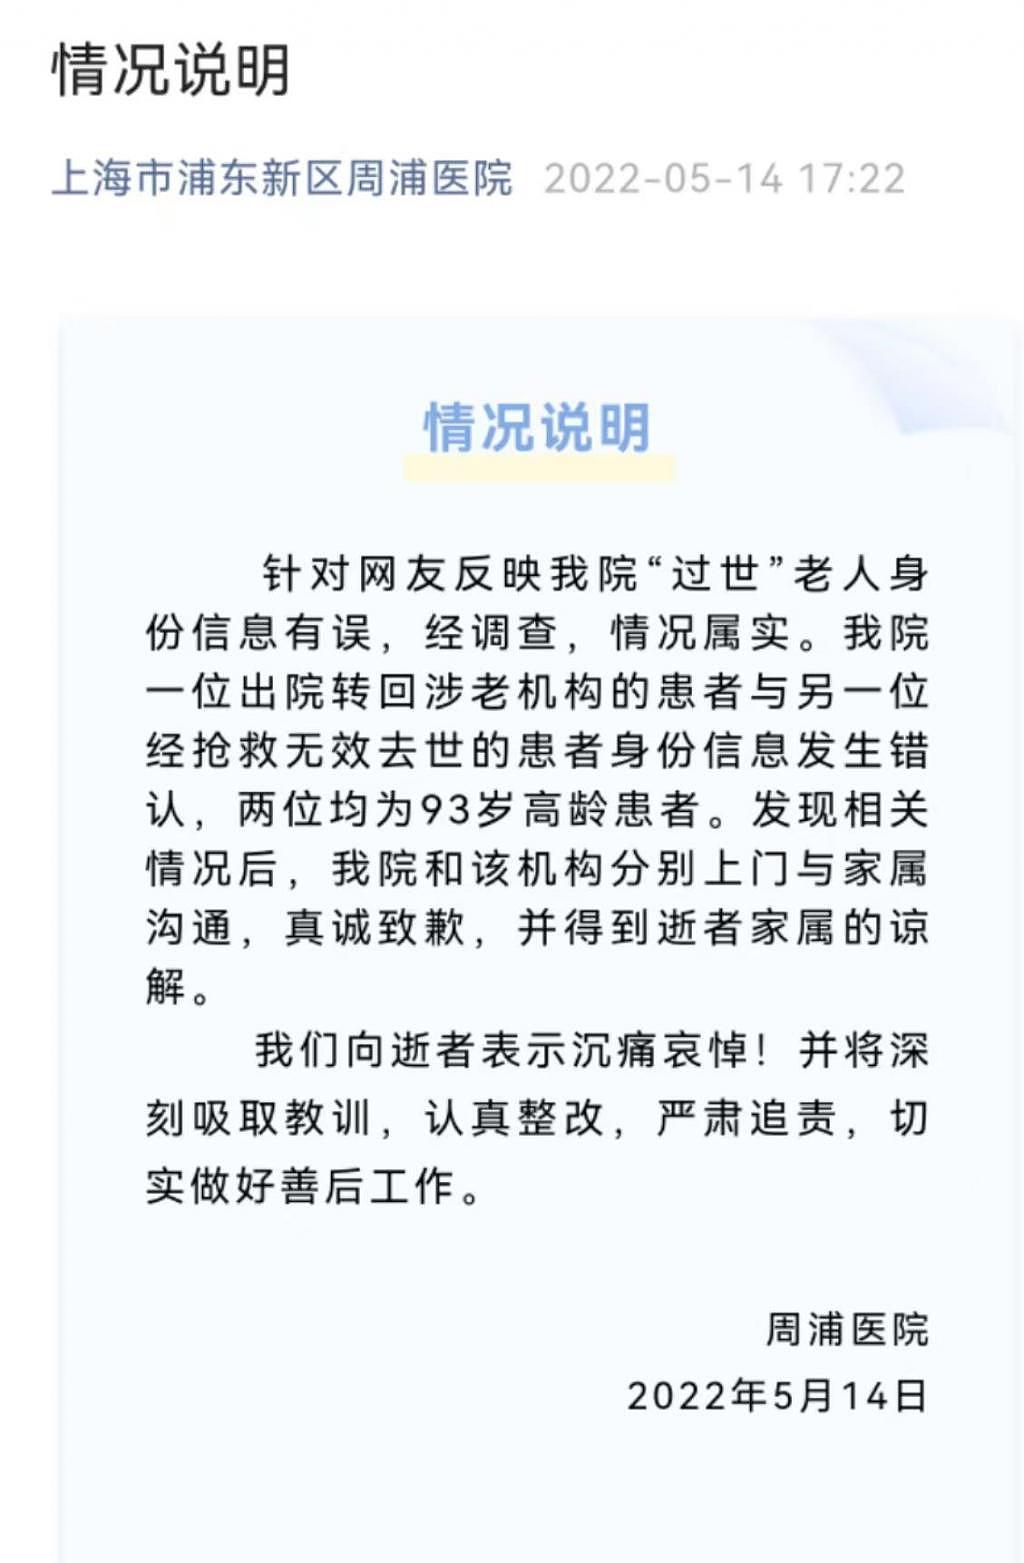 上海周浦医院就“过世”老人身份信息错误致歉 - 1